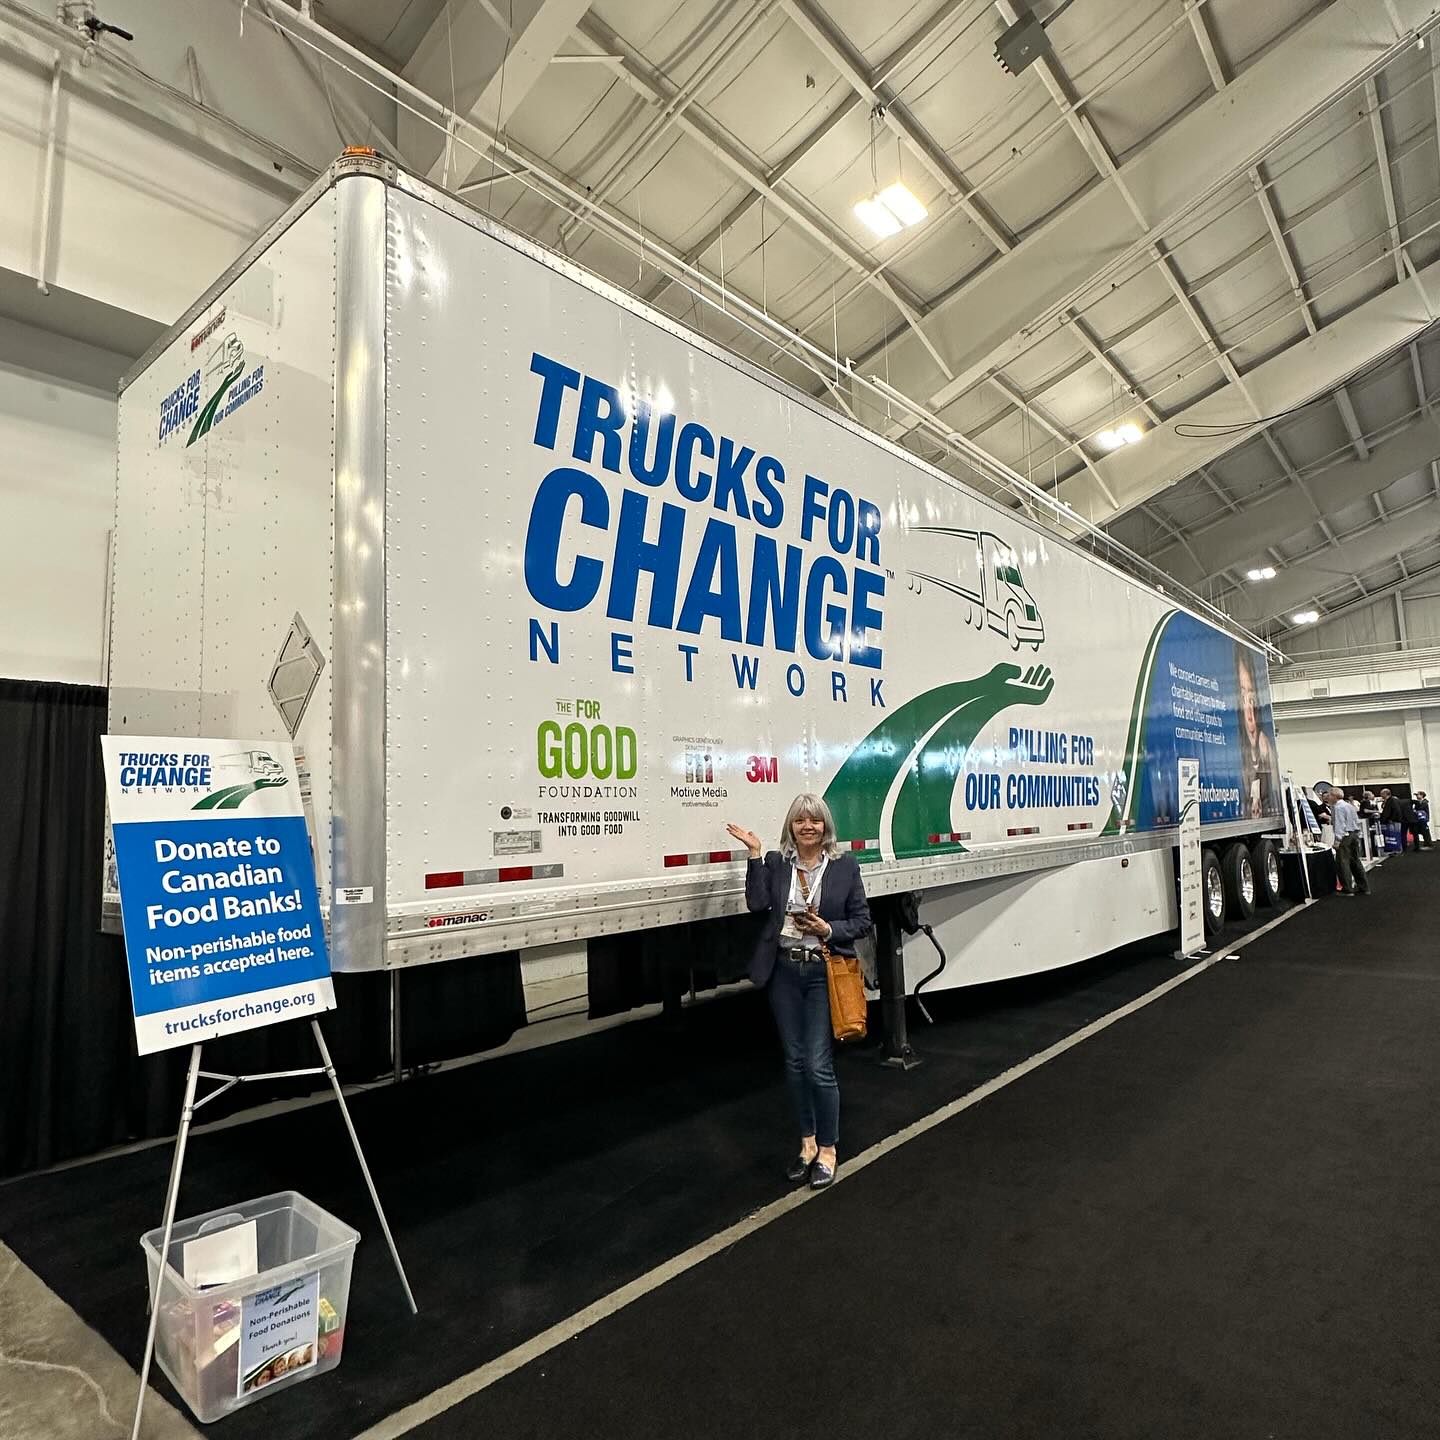 Trucks for Change